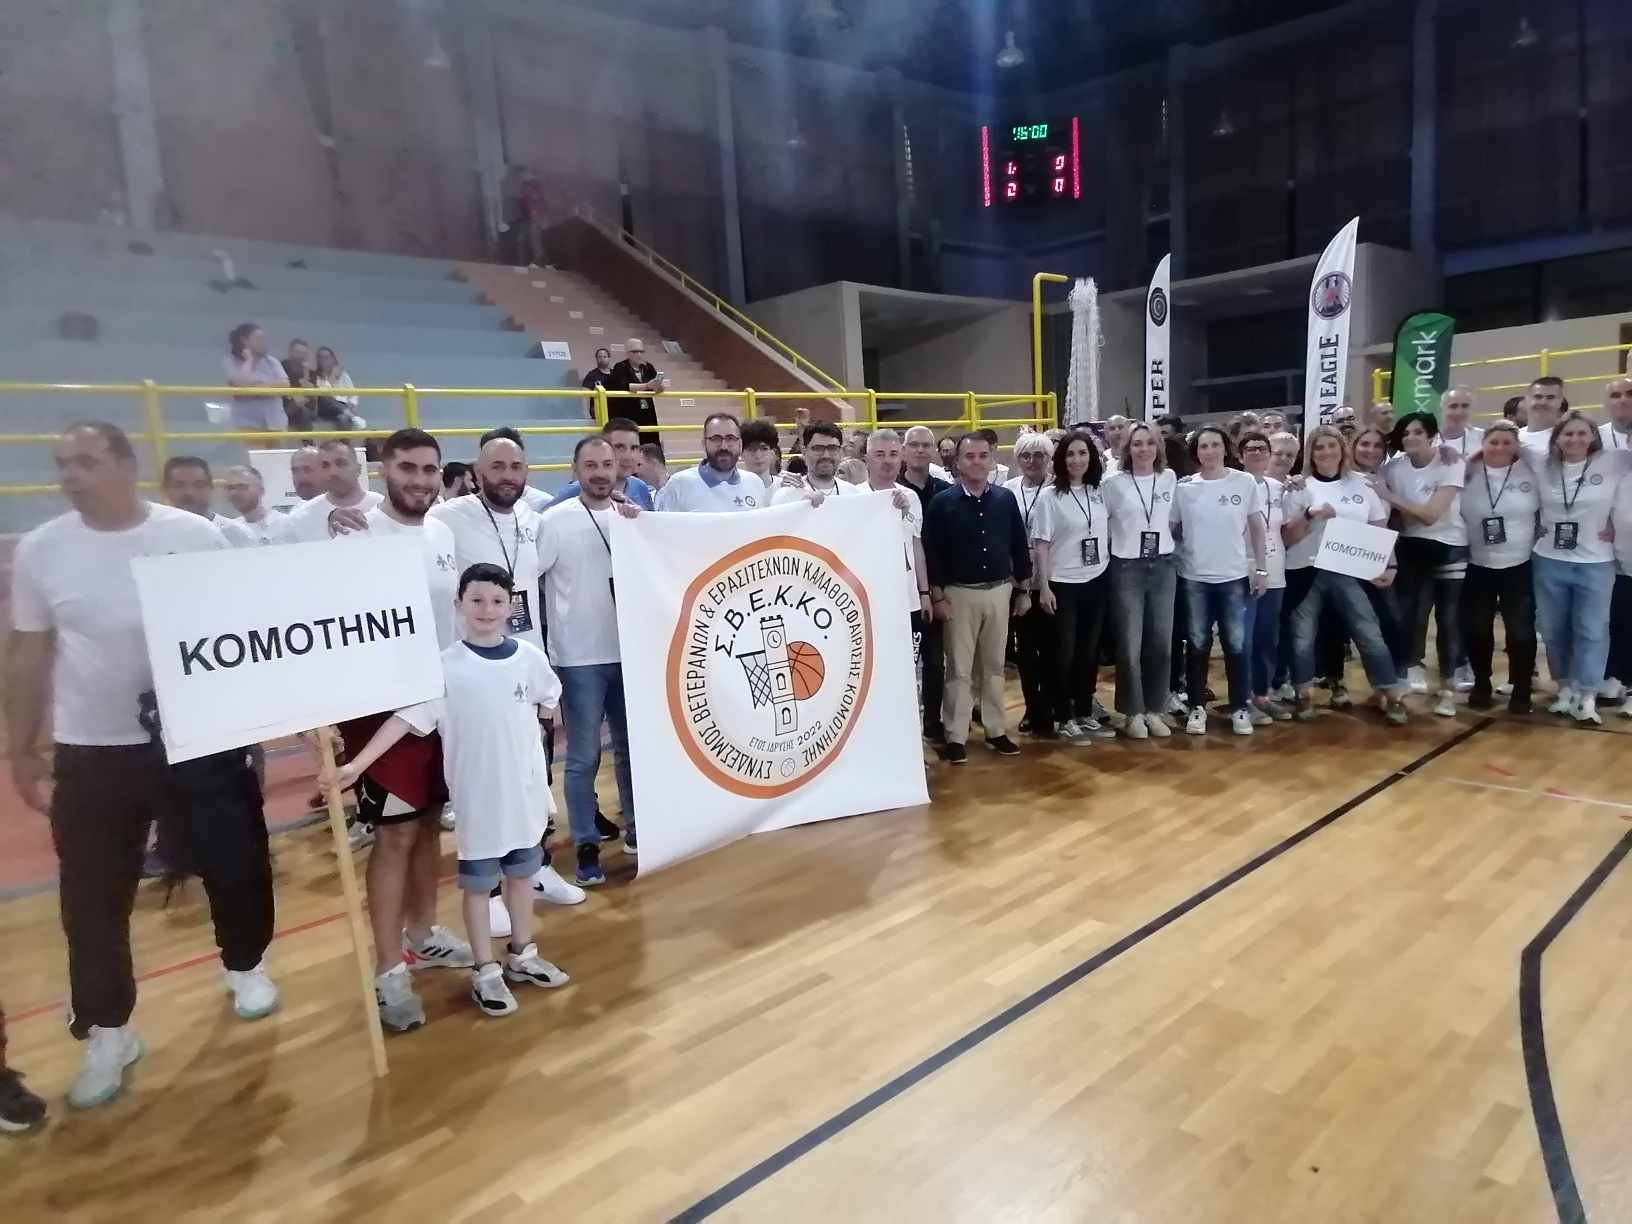 Πανελλήνιο Πρωτάθλημα Βετεράνων Μπάσκετ στην Κομοτηνή: Ο αθλητισμός στα καλύτερα του !